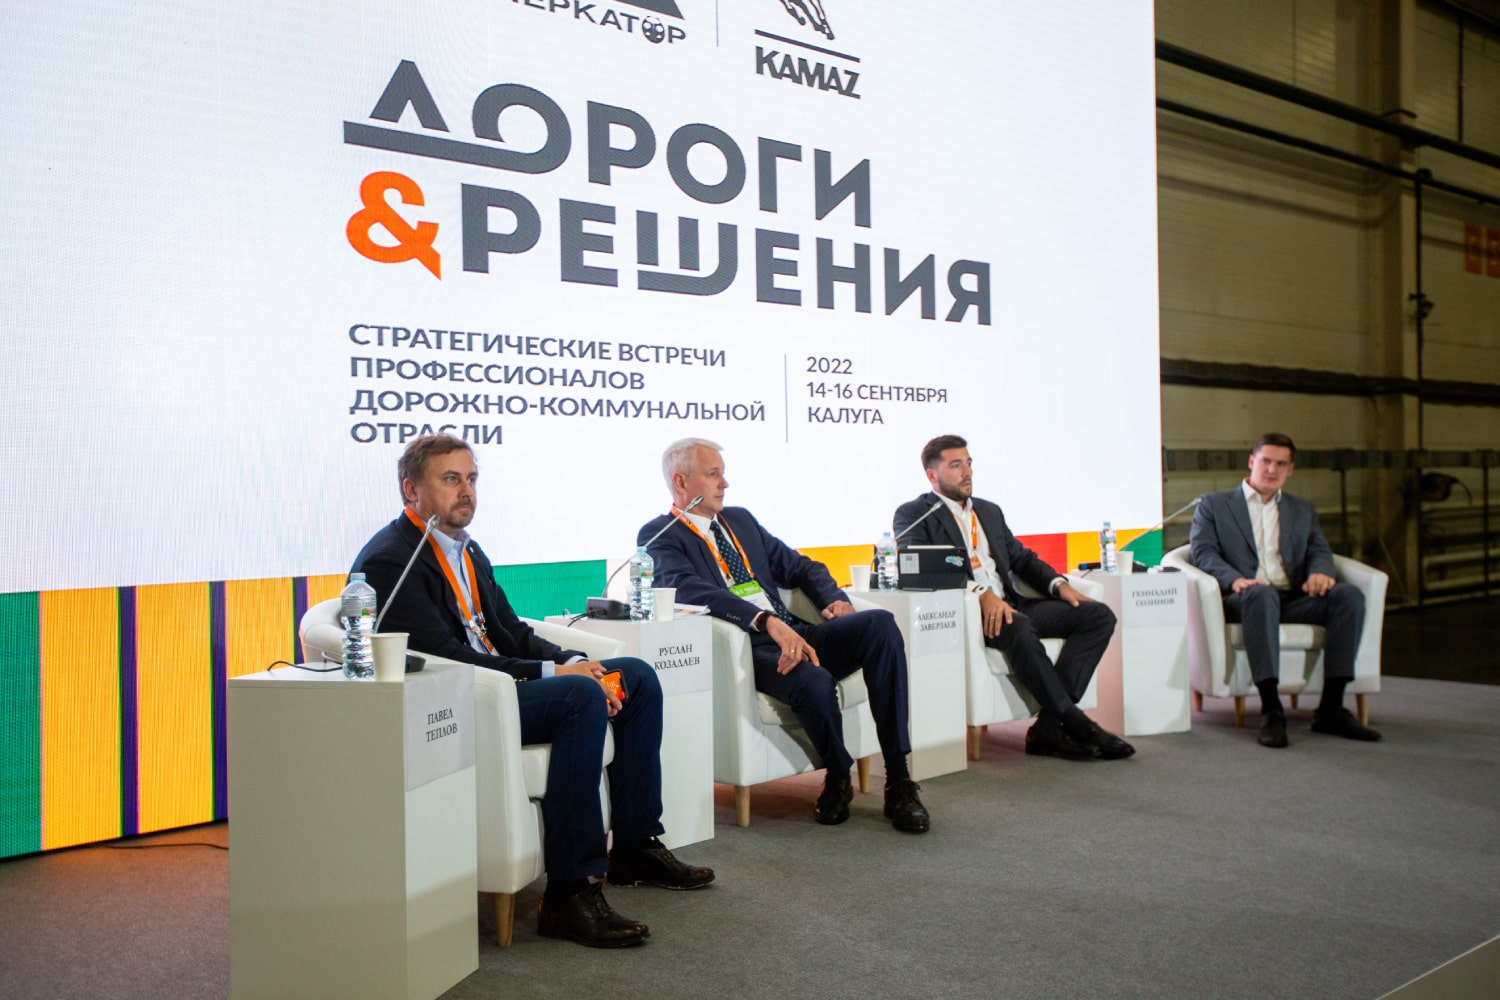 Мероприятие “Дороги&Решения” на заводе Меркатор в Калуге в 2022 году